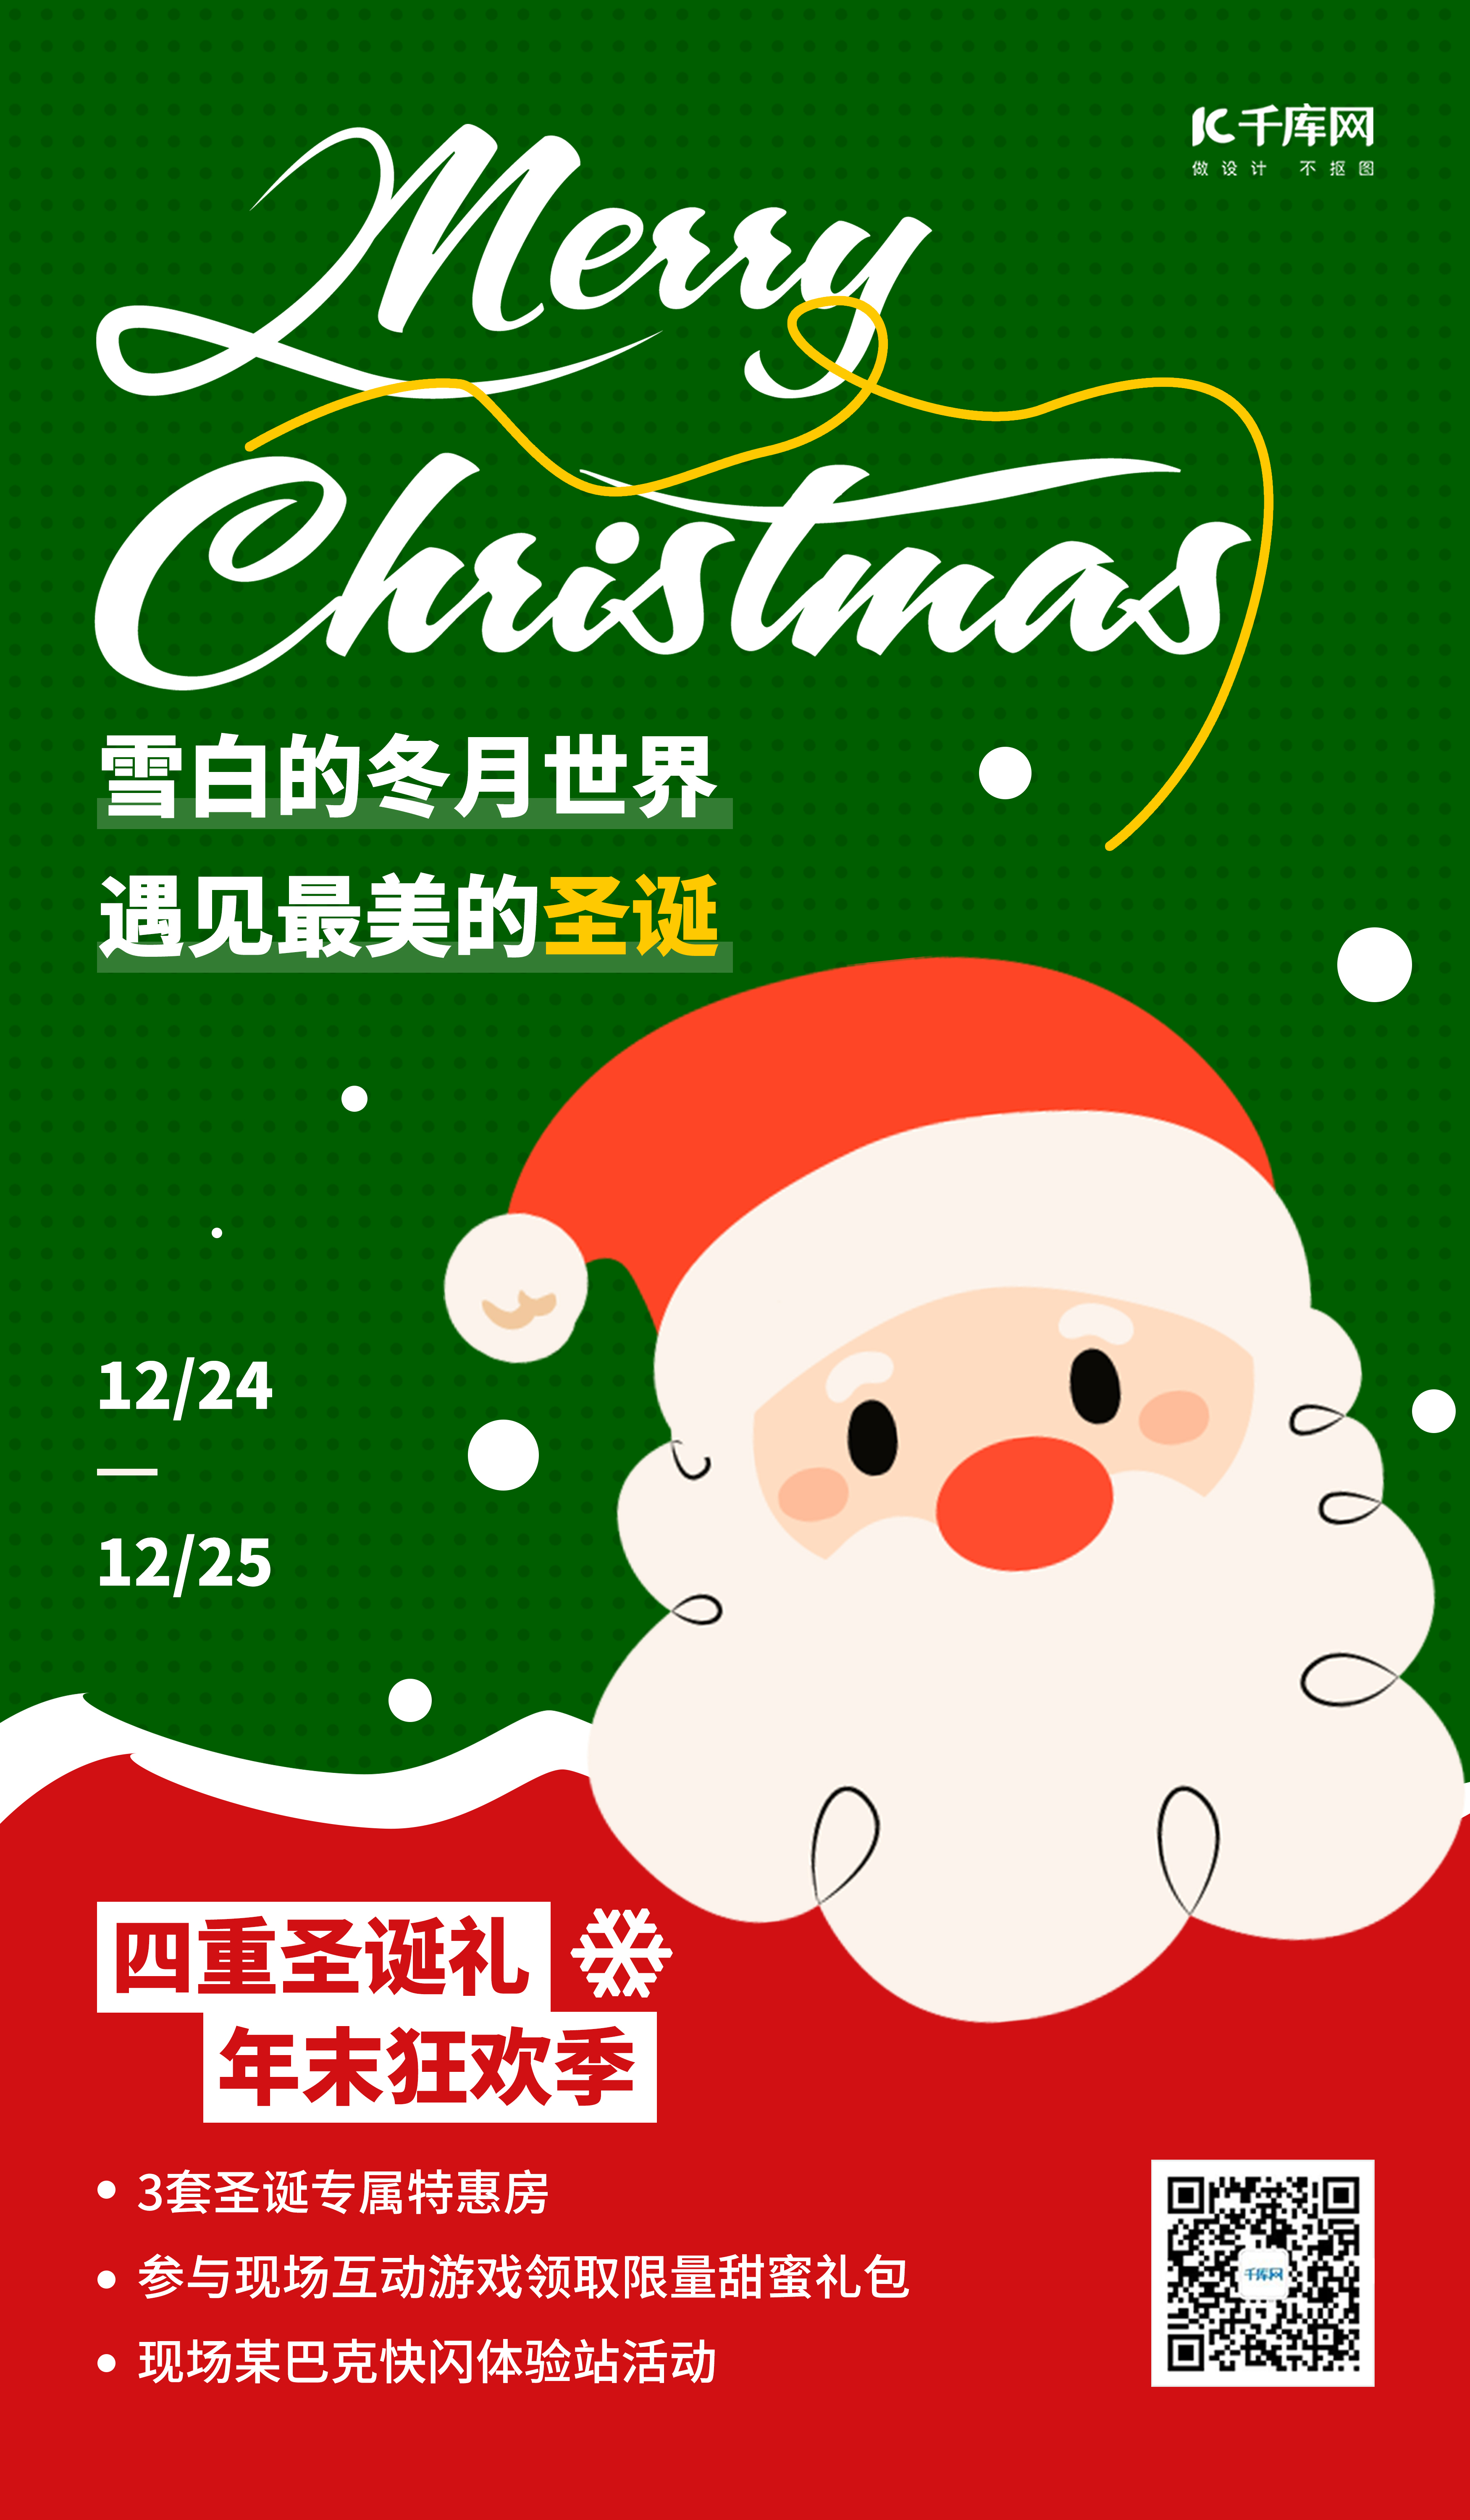 圣诞节促销活动 绿色扁平简约海报图片